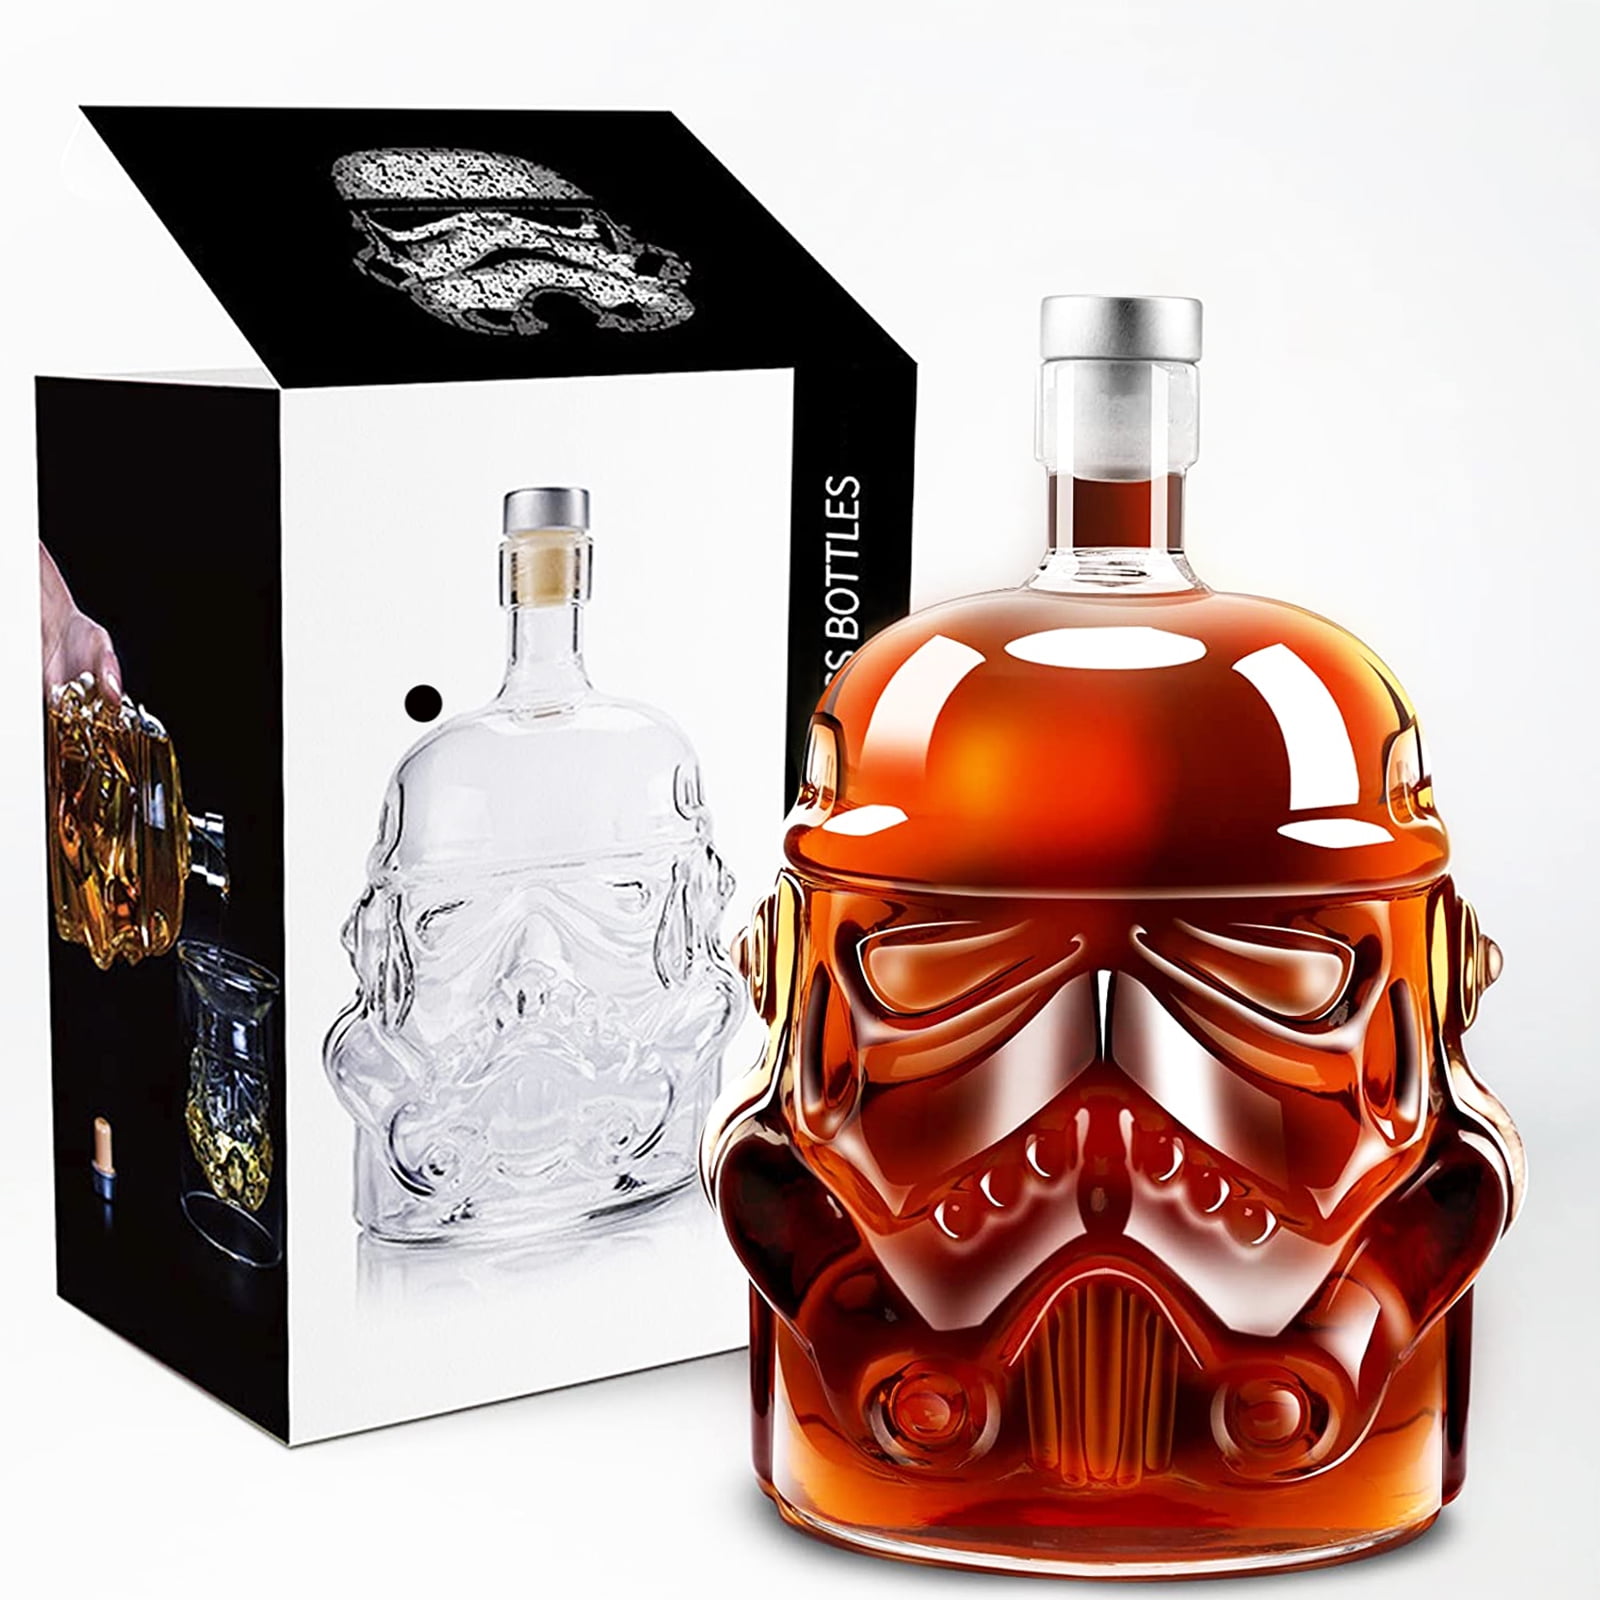 Star Wars Transparent Whiskey Decanter Set Stormtrooper Bottle